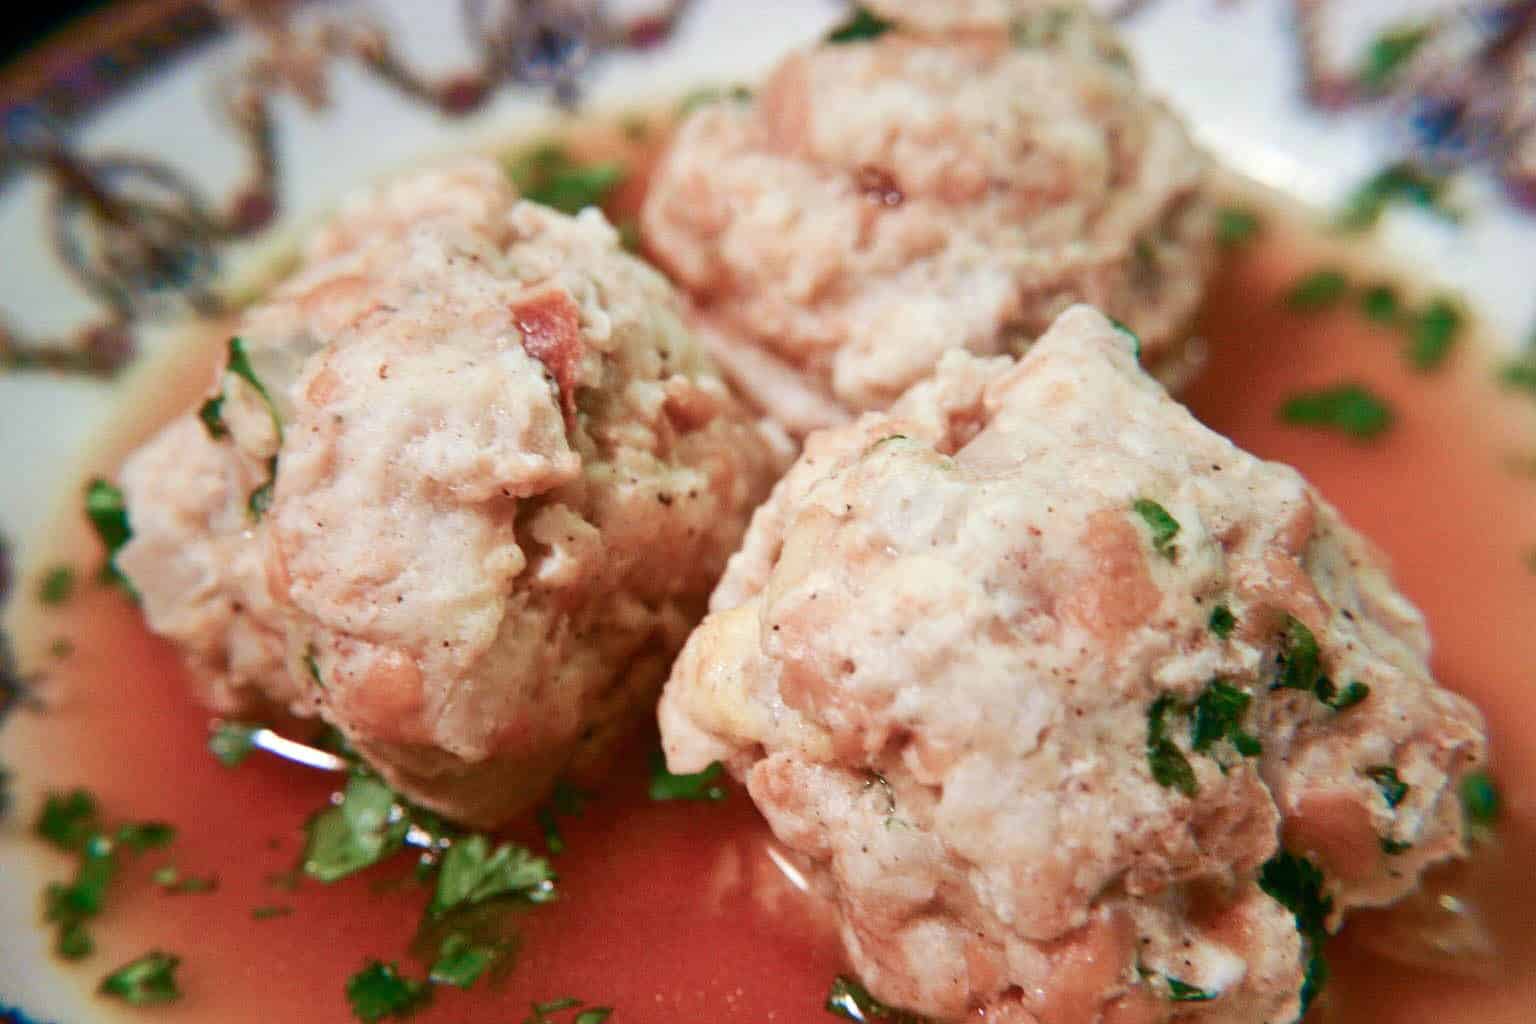 Tirolean Dumplings | Tiroler Knödel – with Foie Gras Sausages